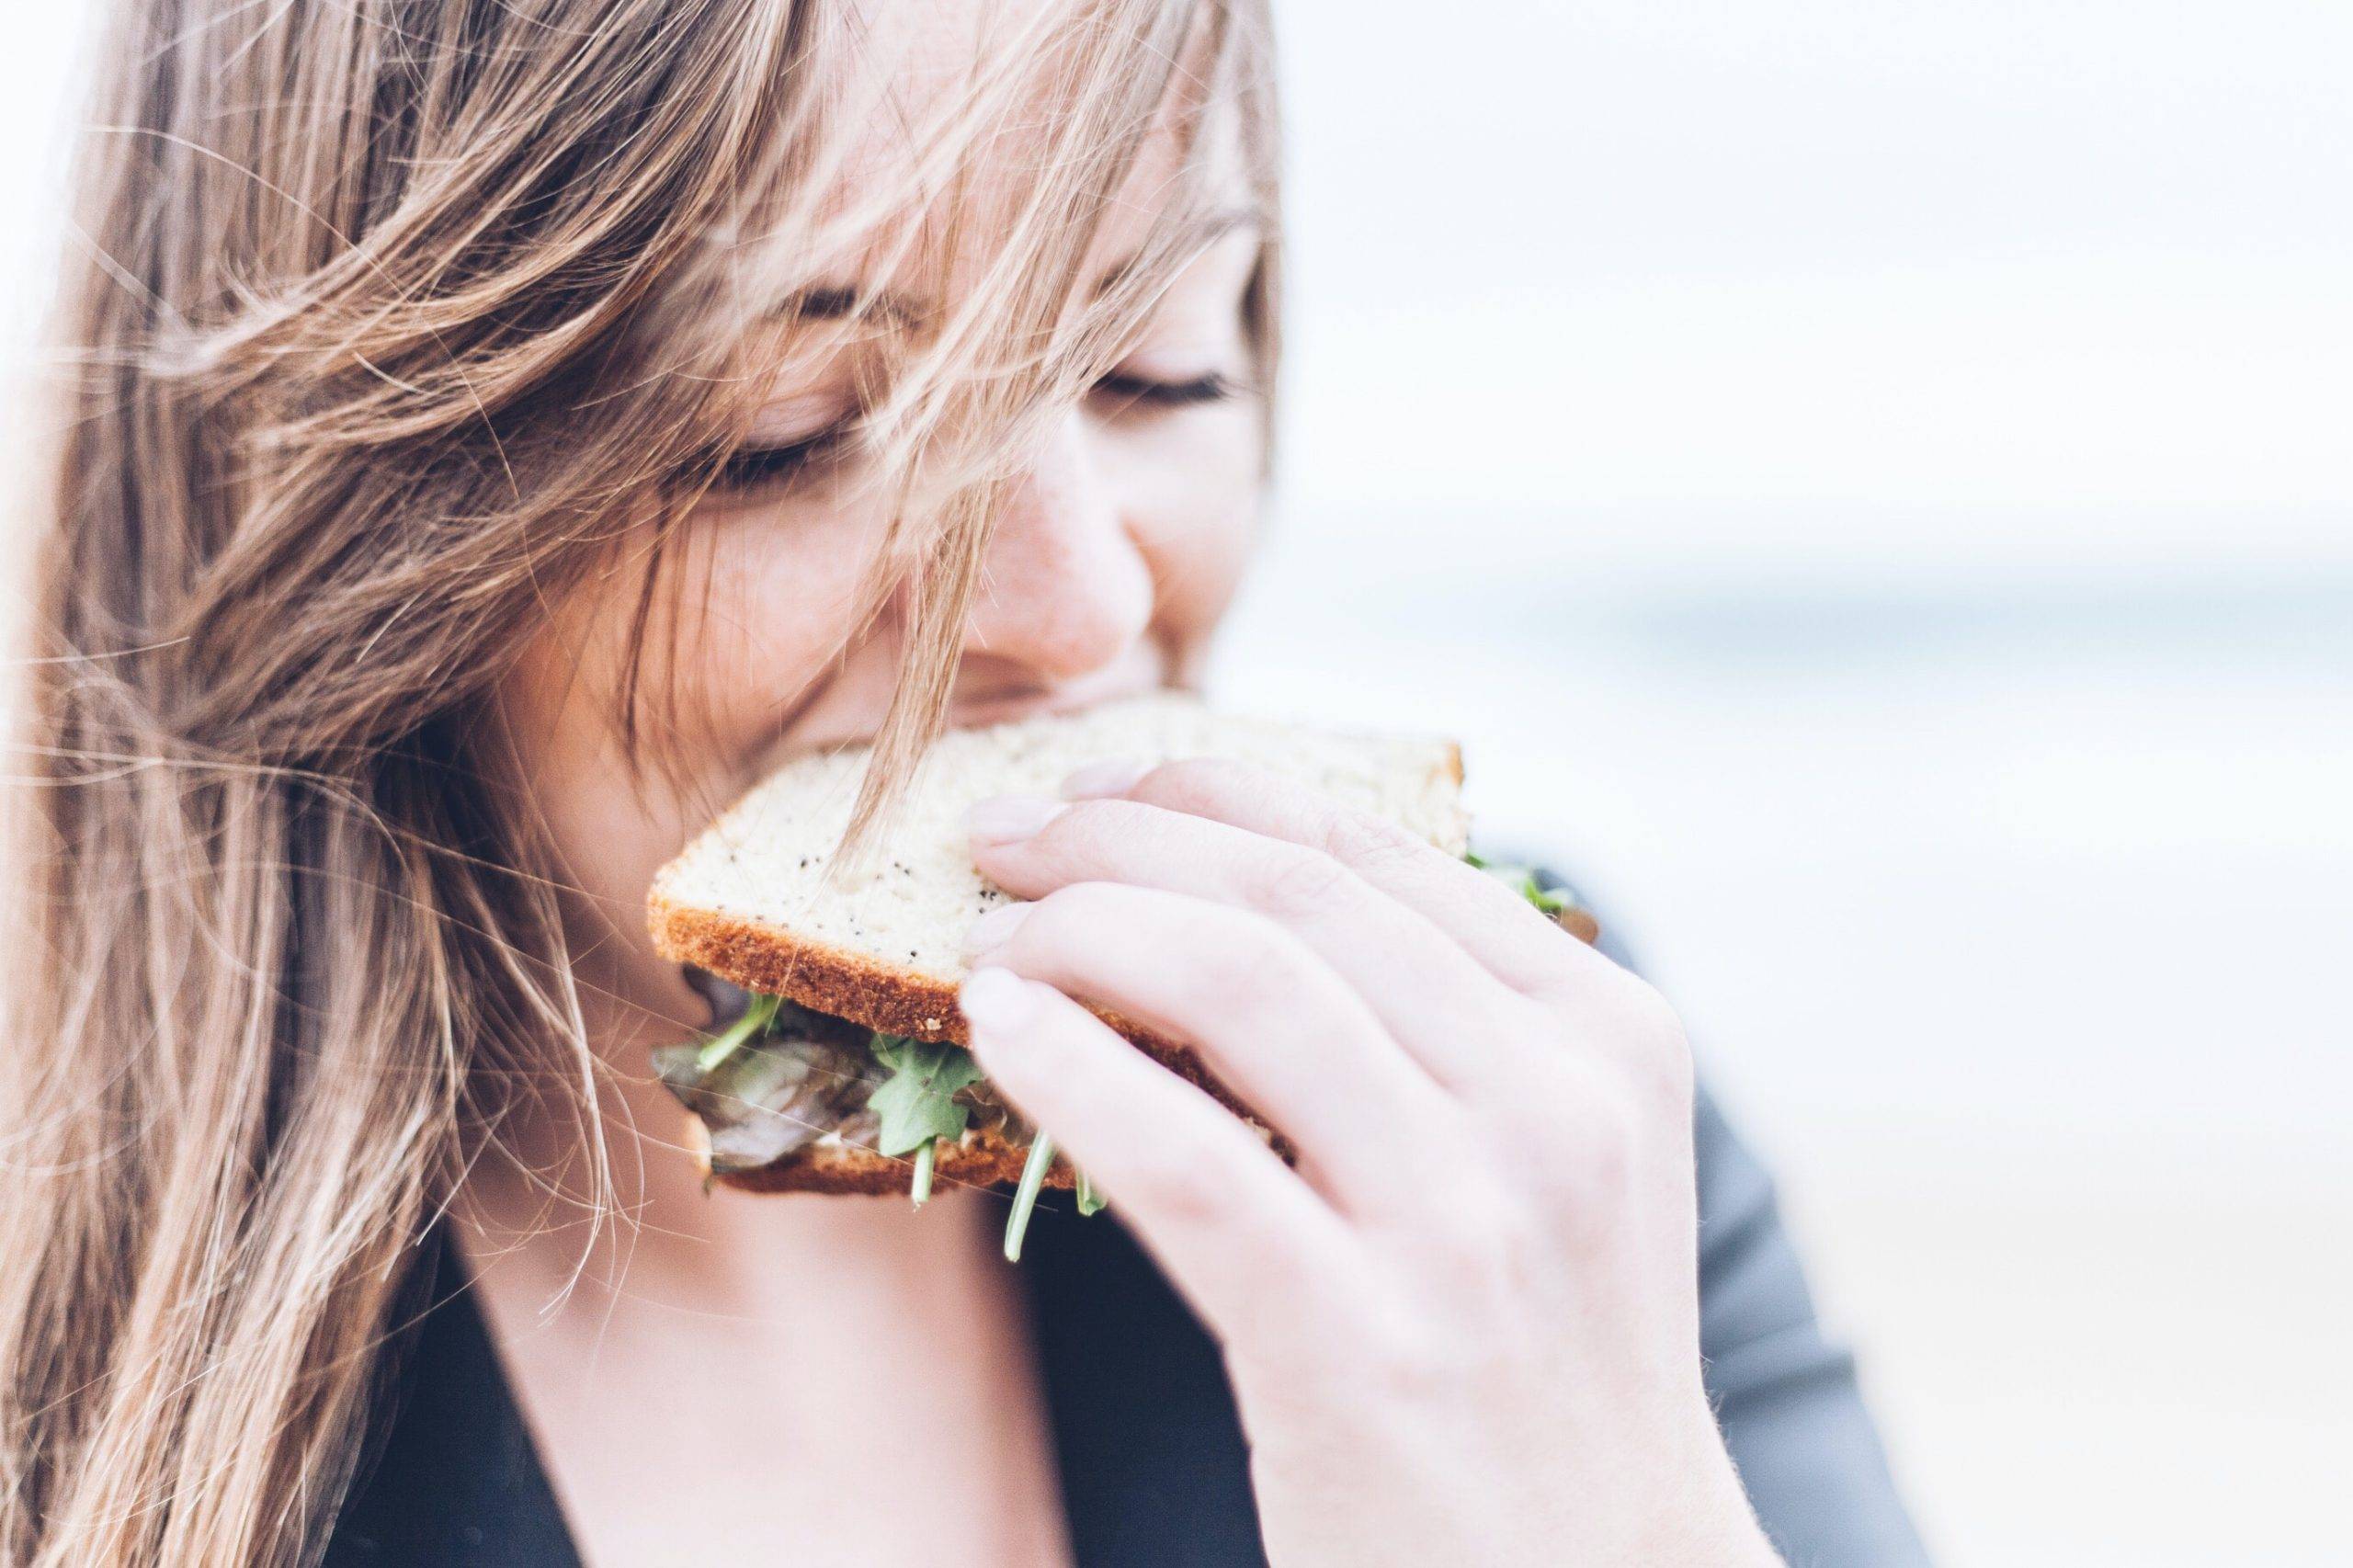 Kvinna äter en dubbelmacka. Bilden är tagen på kvinnans ansikte när hon håller en smörgås i handen och tar ett bett. Hon har brunt utsläppt hår och äter utomhus